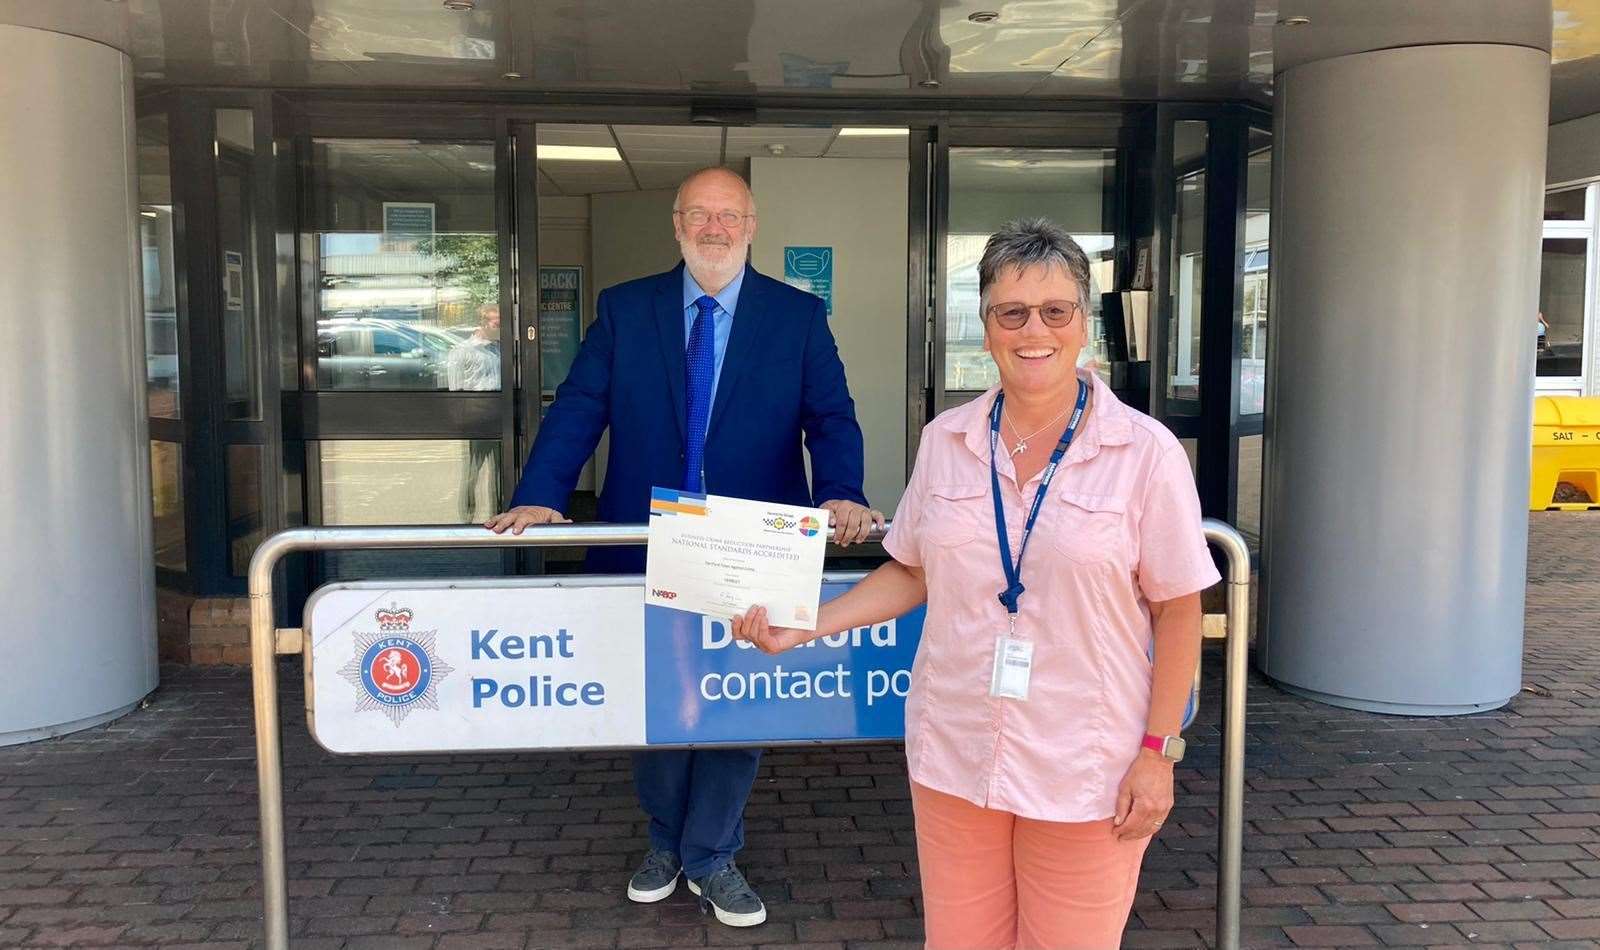 Dartford Town Against Crime (DTAC) intelligence manager Karen Radford and Dartford council leader Jeremy Kite celebrating success after being named among UK's best crime crackdown partnerships in the UK